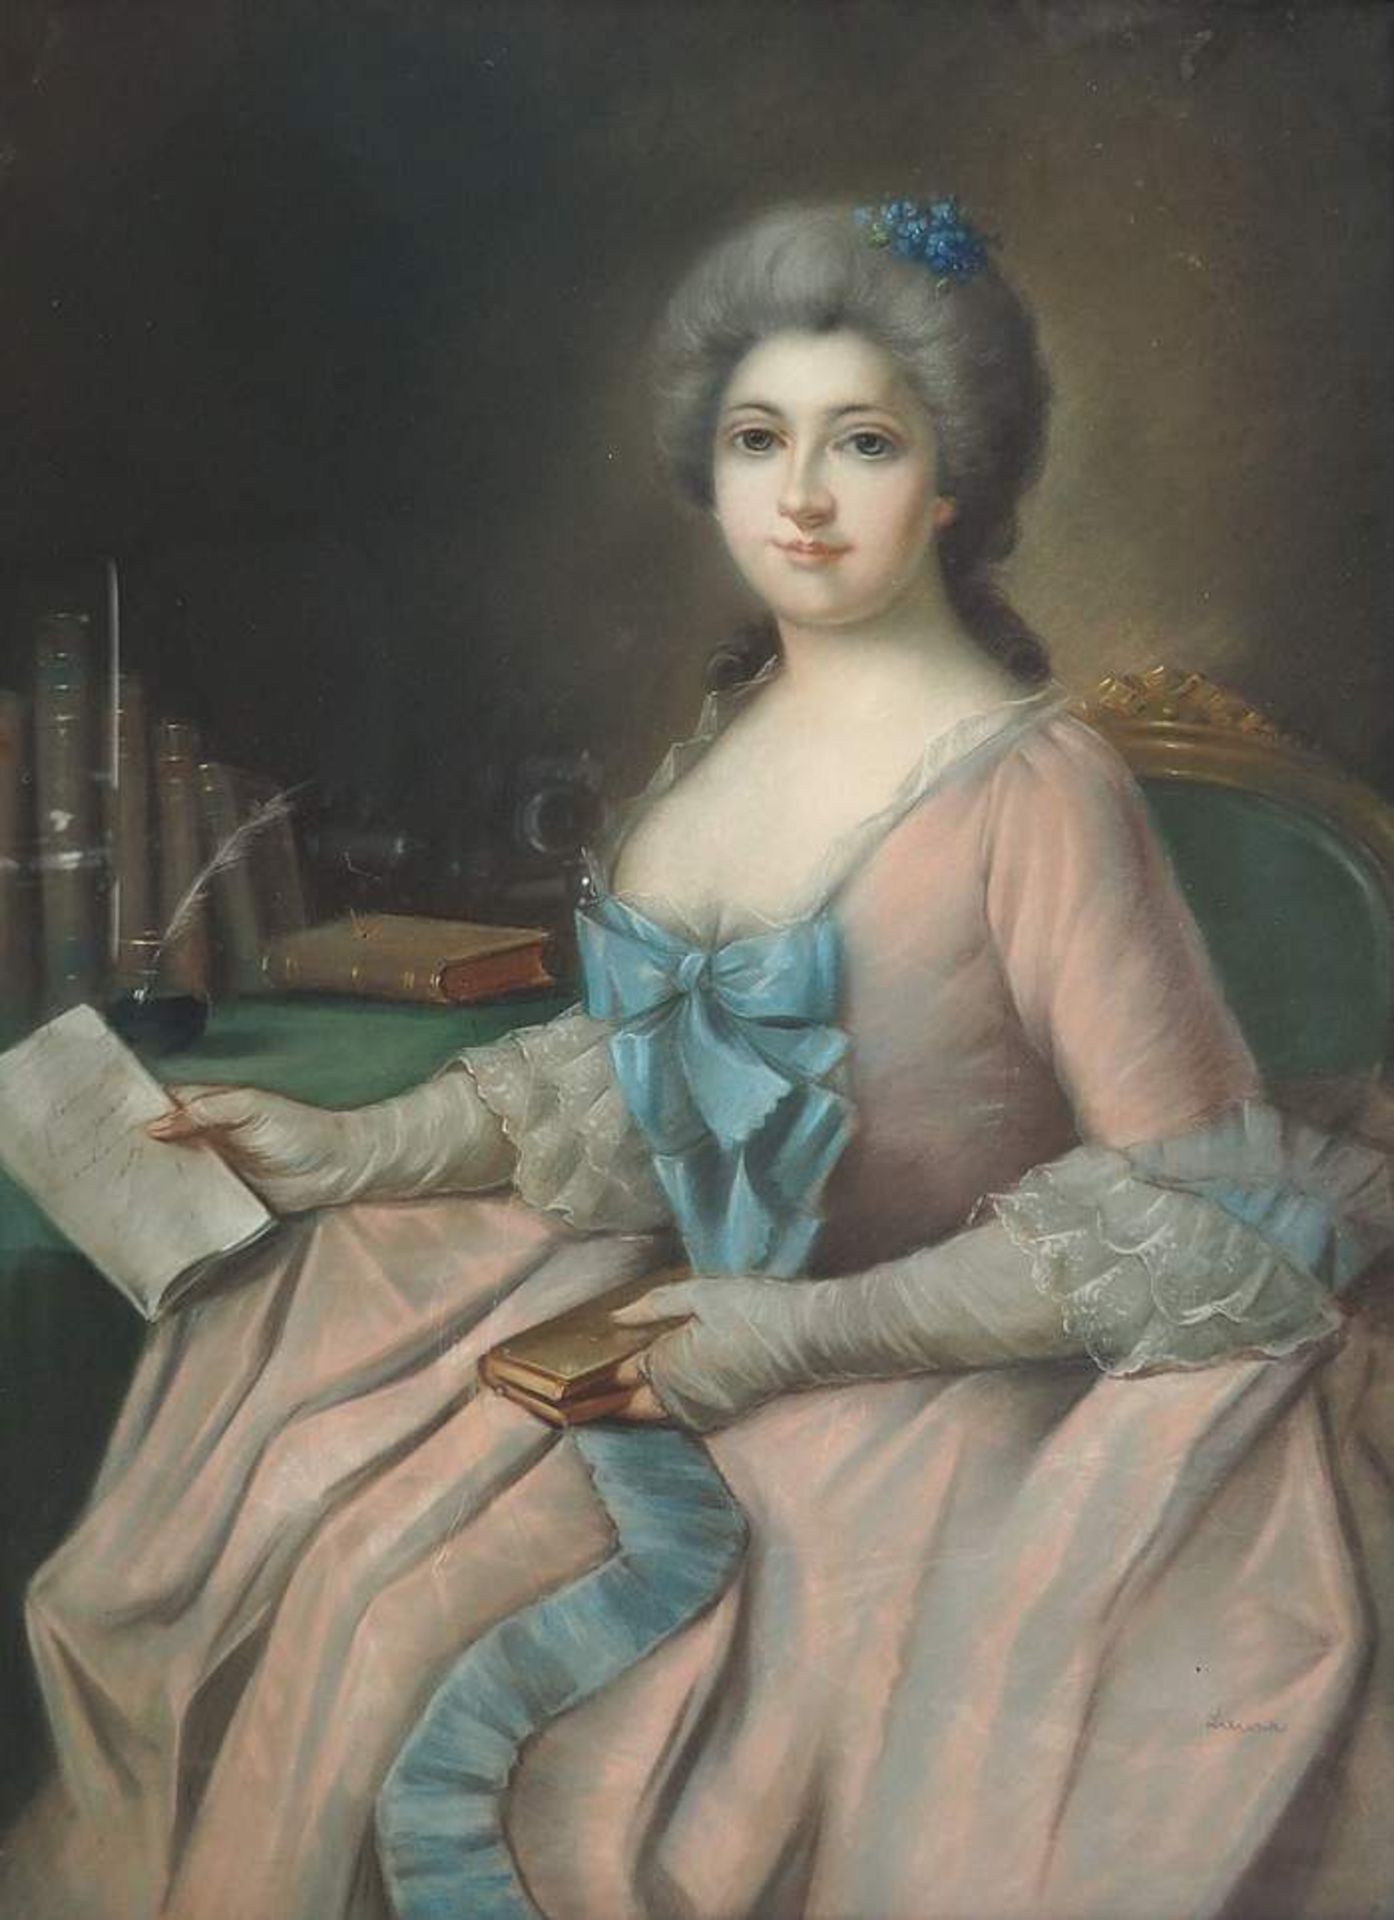 Anonymer Künstler des 18. Jahrhunderts. Portrait einer Edeldame im eleganten tief décollettiertem